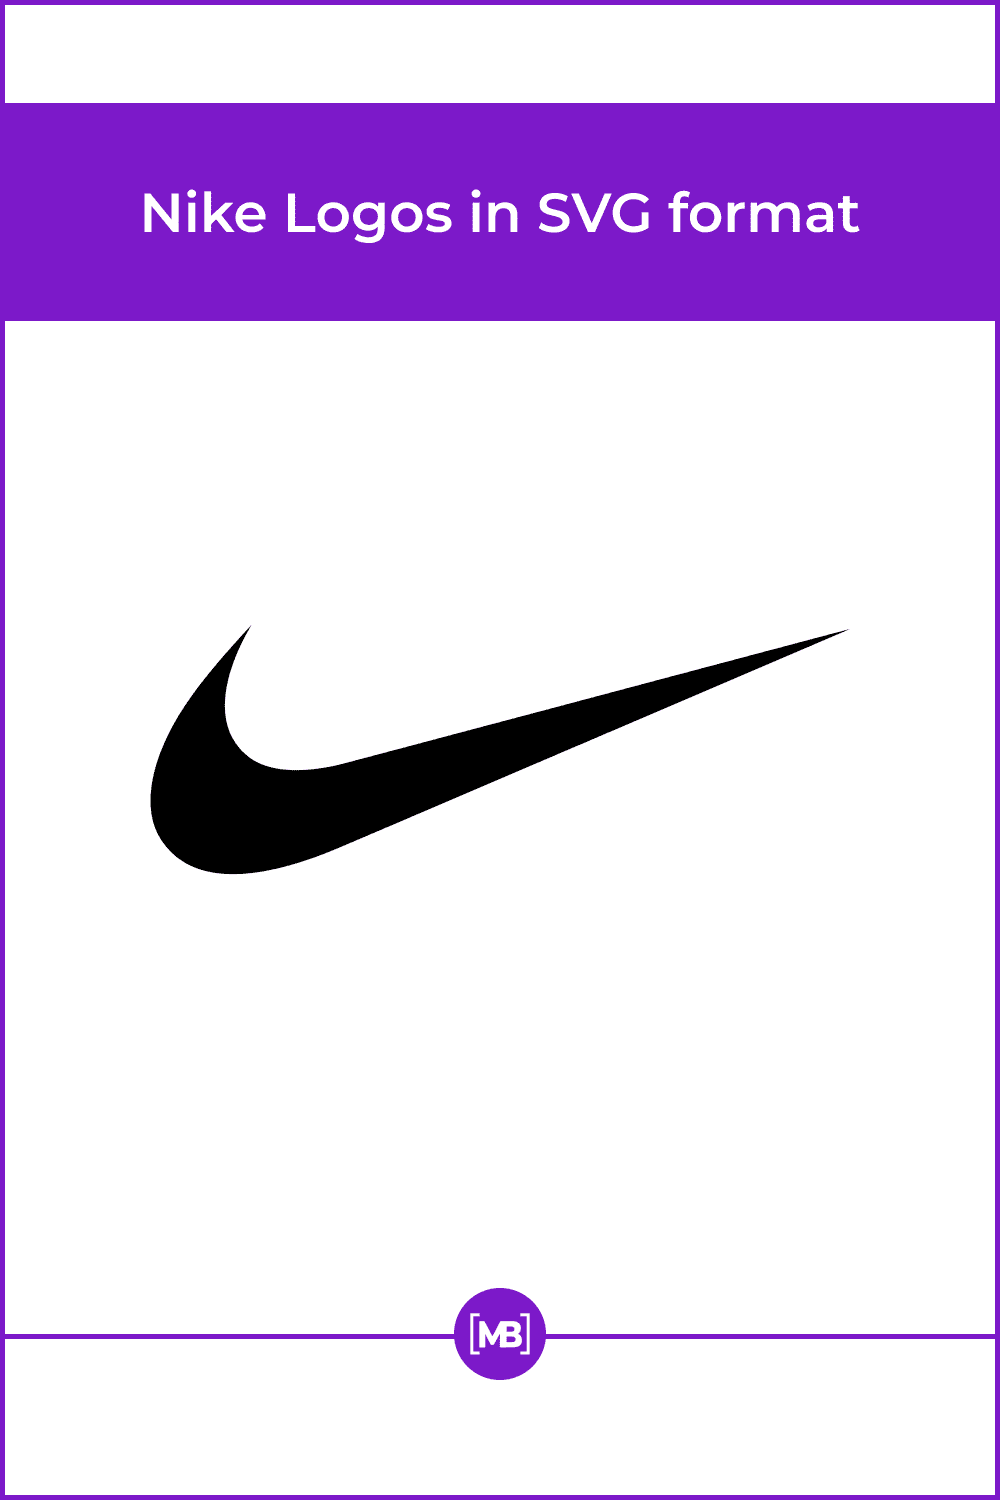 Nike Logos in SVG format.